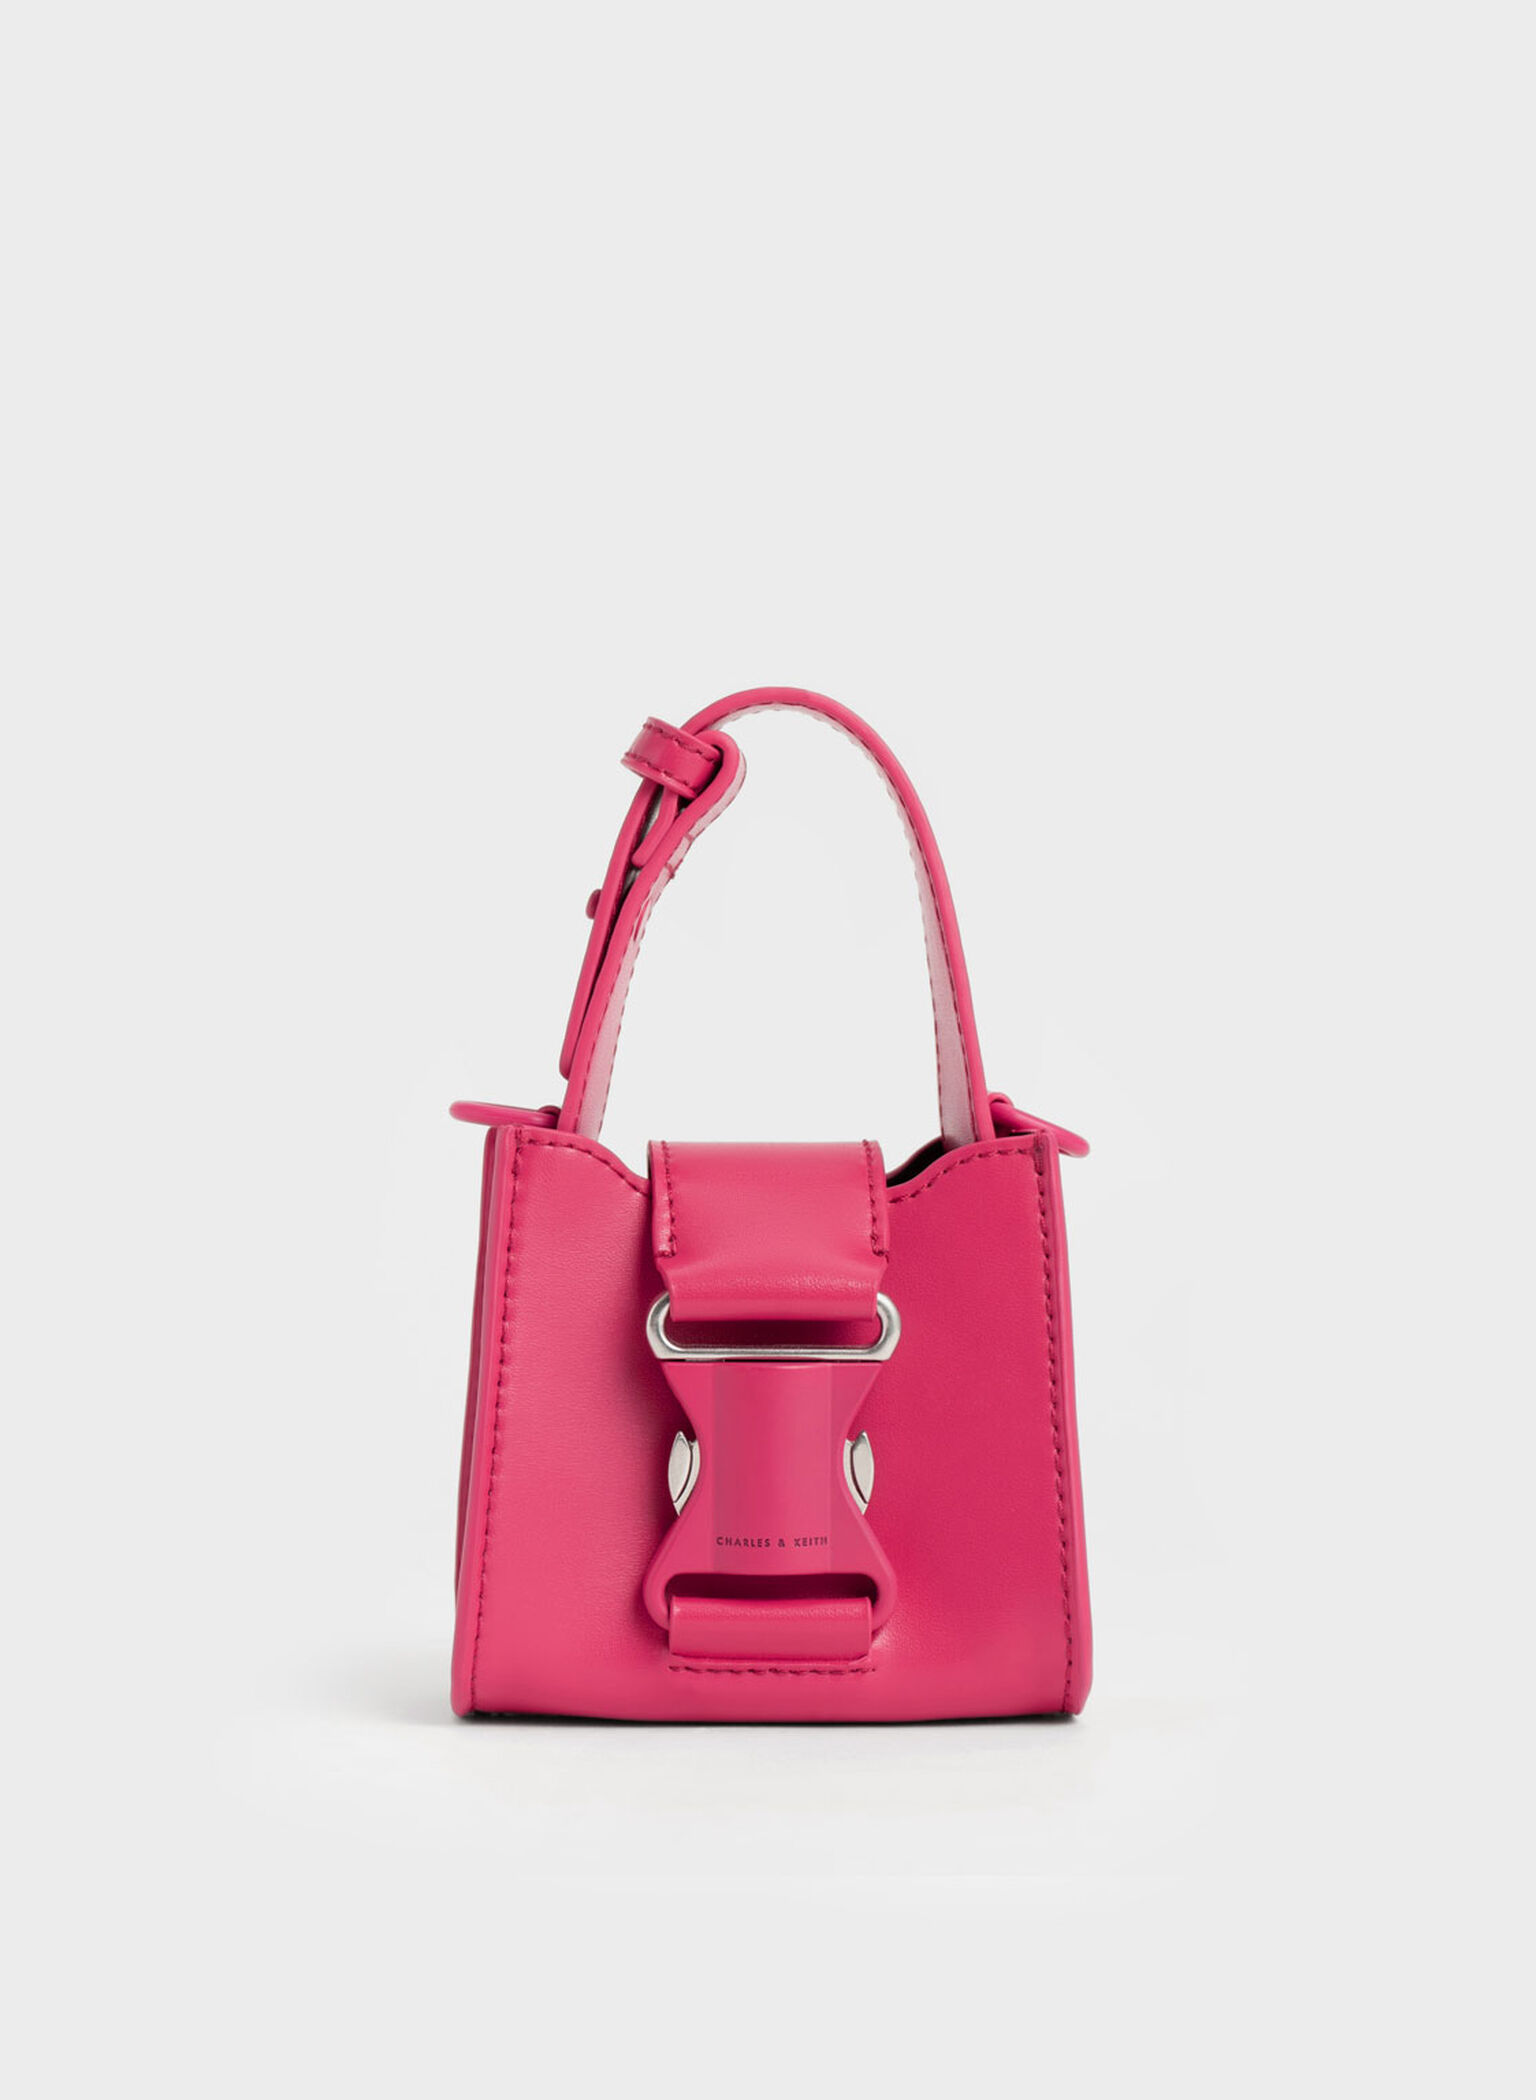 Pearl Jelly Bag Mini Small Designer Bags Kids Mini Bags - China Bag and  Handbags price